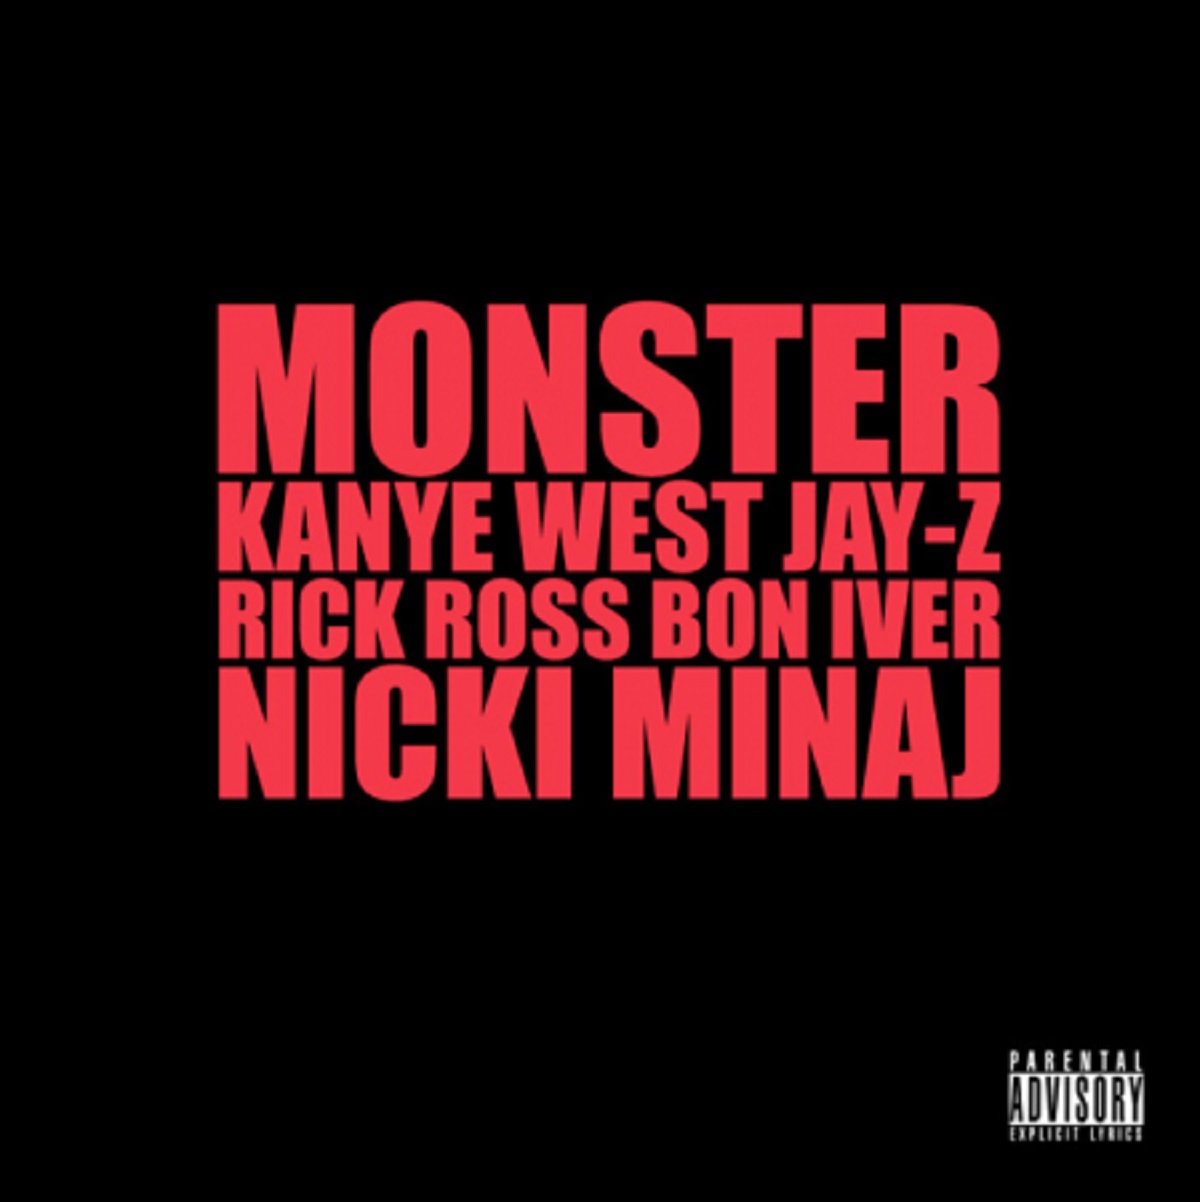 Kanye West Monster single